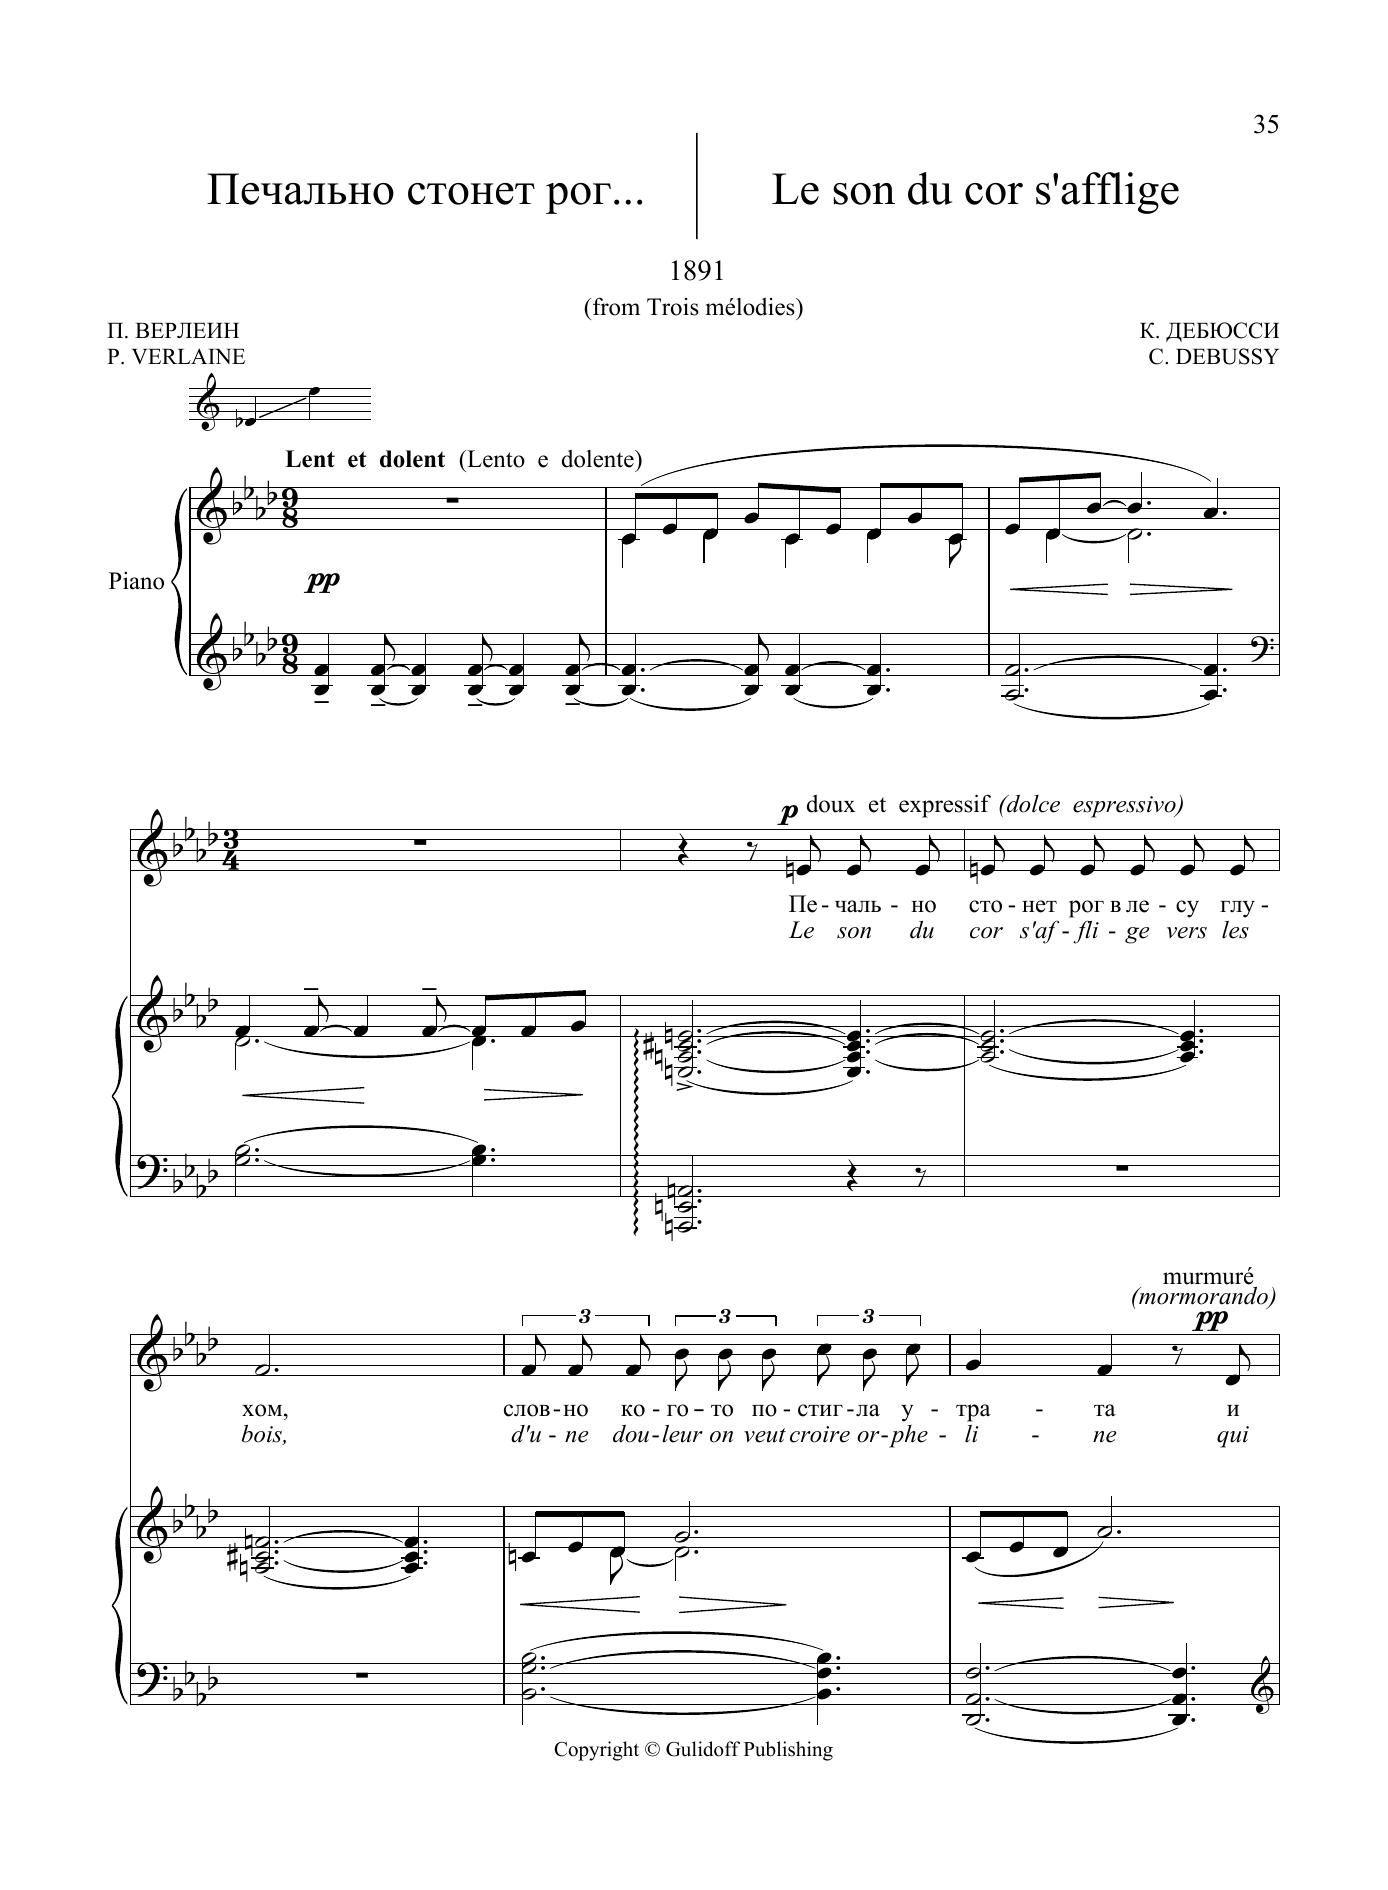 Download Claude Debussy 20 Songs Vol. 2: Le son du cor s'afflig Sheet Music